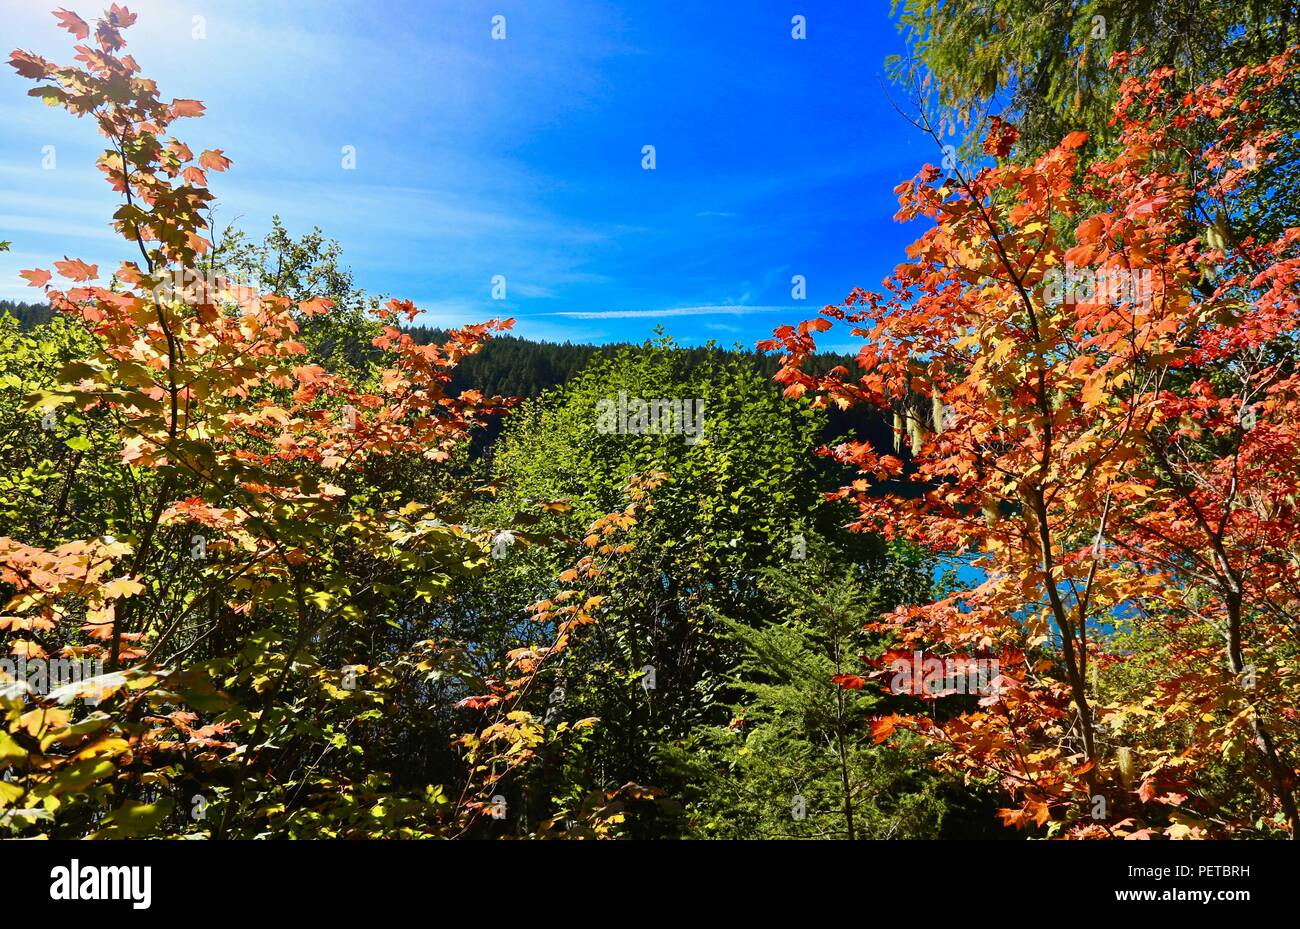 Les feuilles d'automne jaune et rouge avec des plantes vertes, le ciel bleu et le lac Banque D'Images